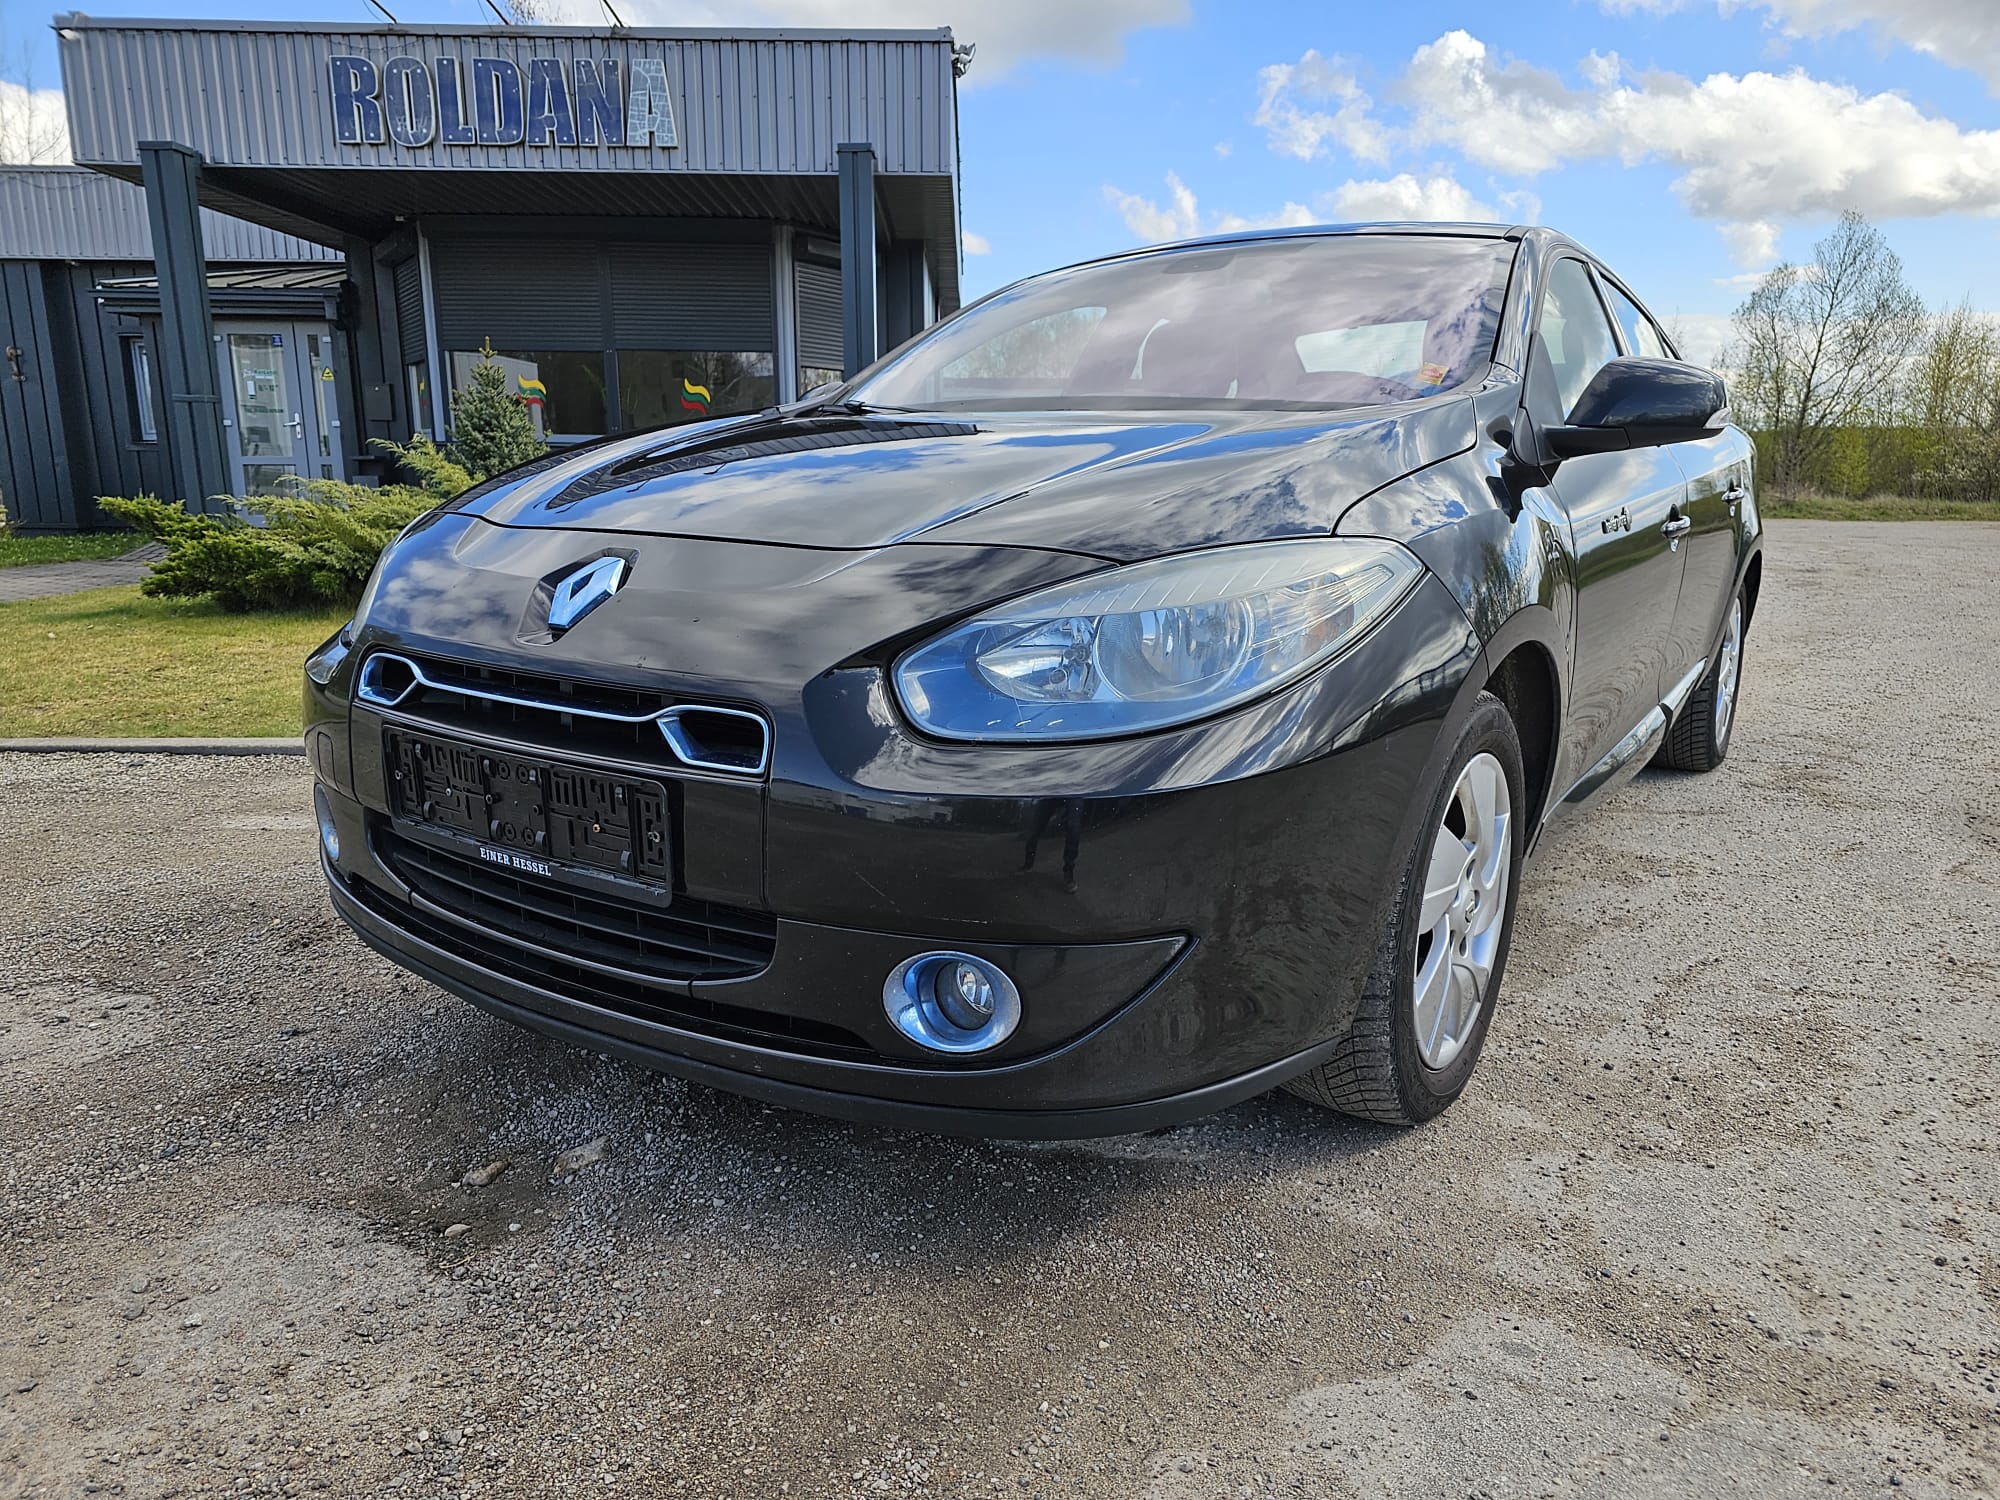 Renault Fluence, 22 kWh, sedanas, 2013-02/naudoti automobiliai/Roldana